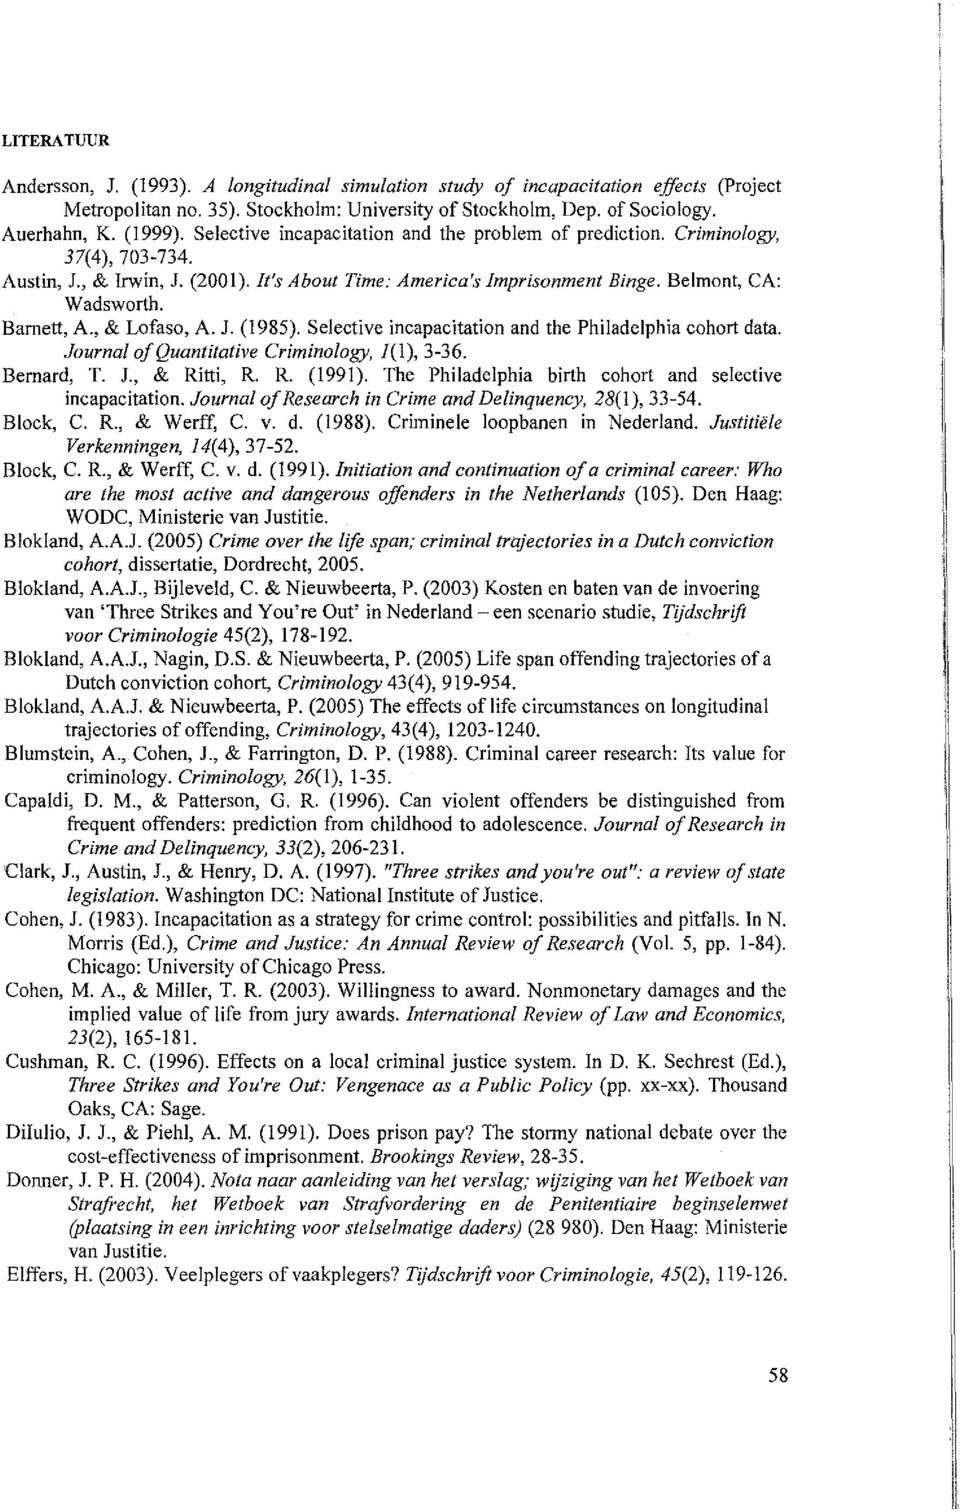 , & Lofaso, A. J. (1985). Selective incapacitation and the Philadelphia cohort data. Journal ofquantitative Criminology, 1(1),3-36. Bernard, T. J., & Ritti, R. R. (1991).